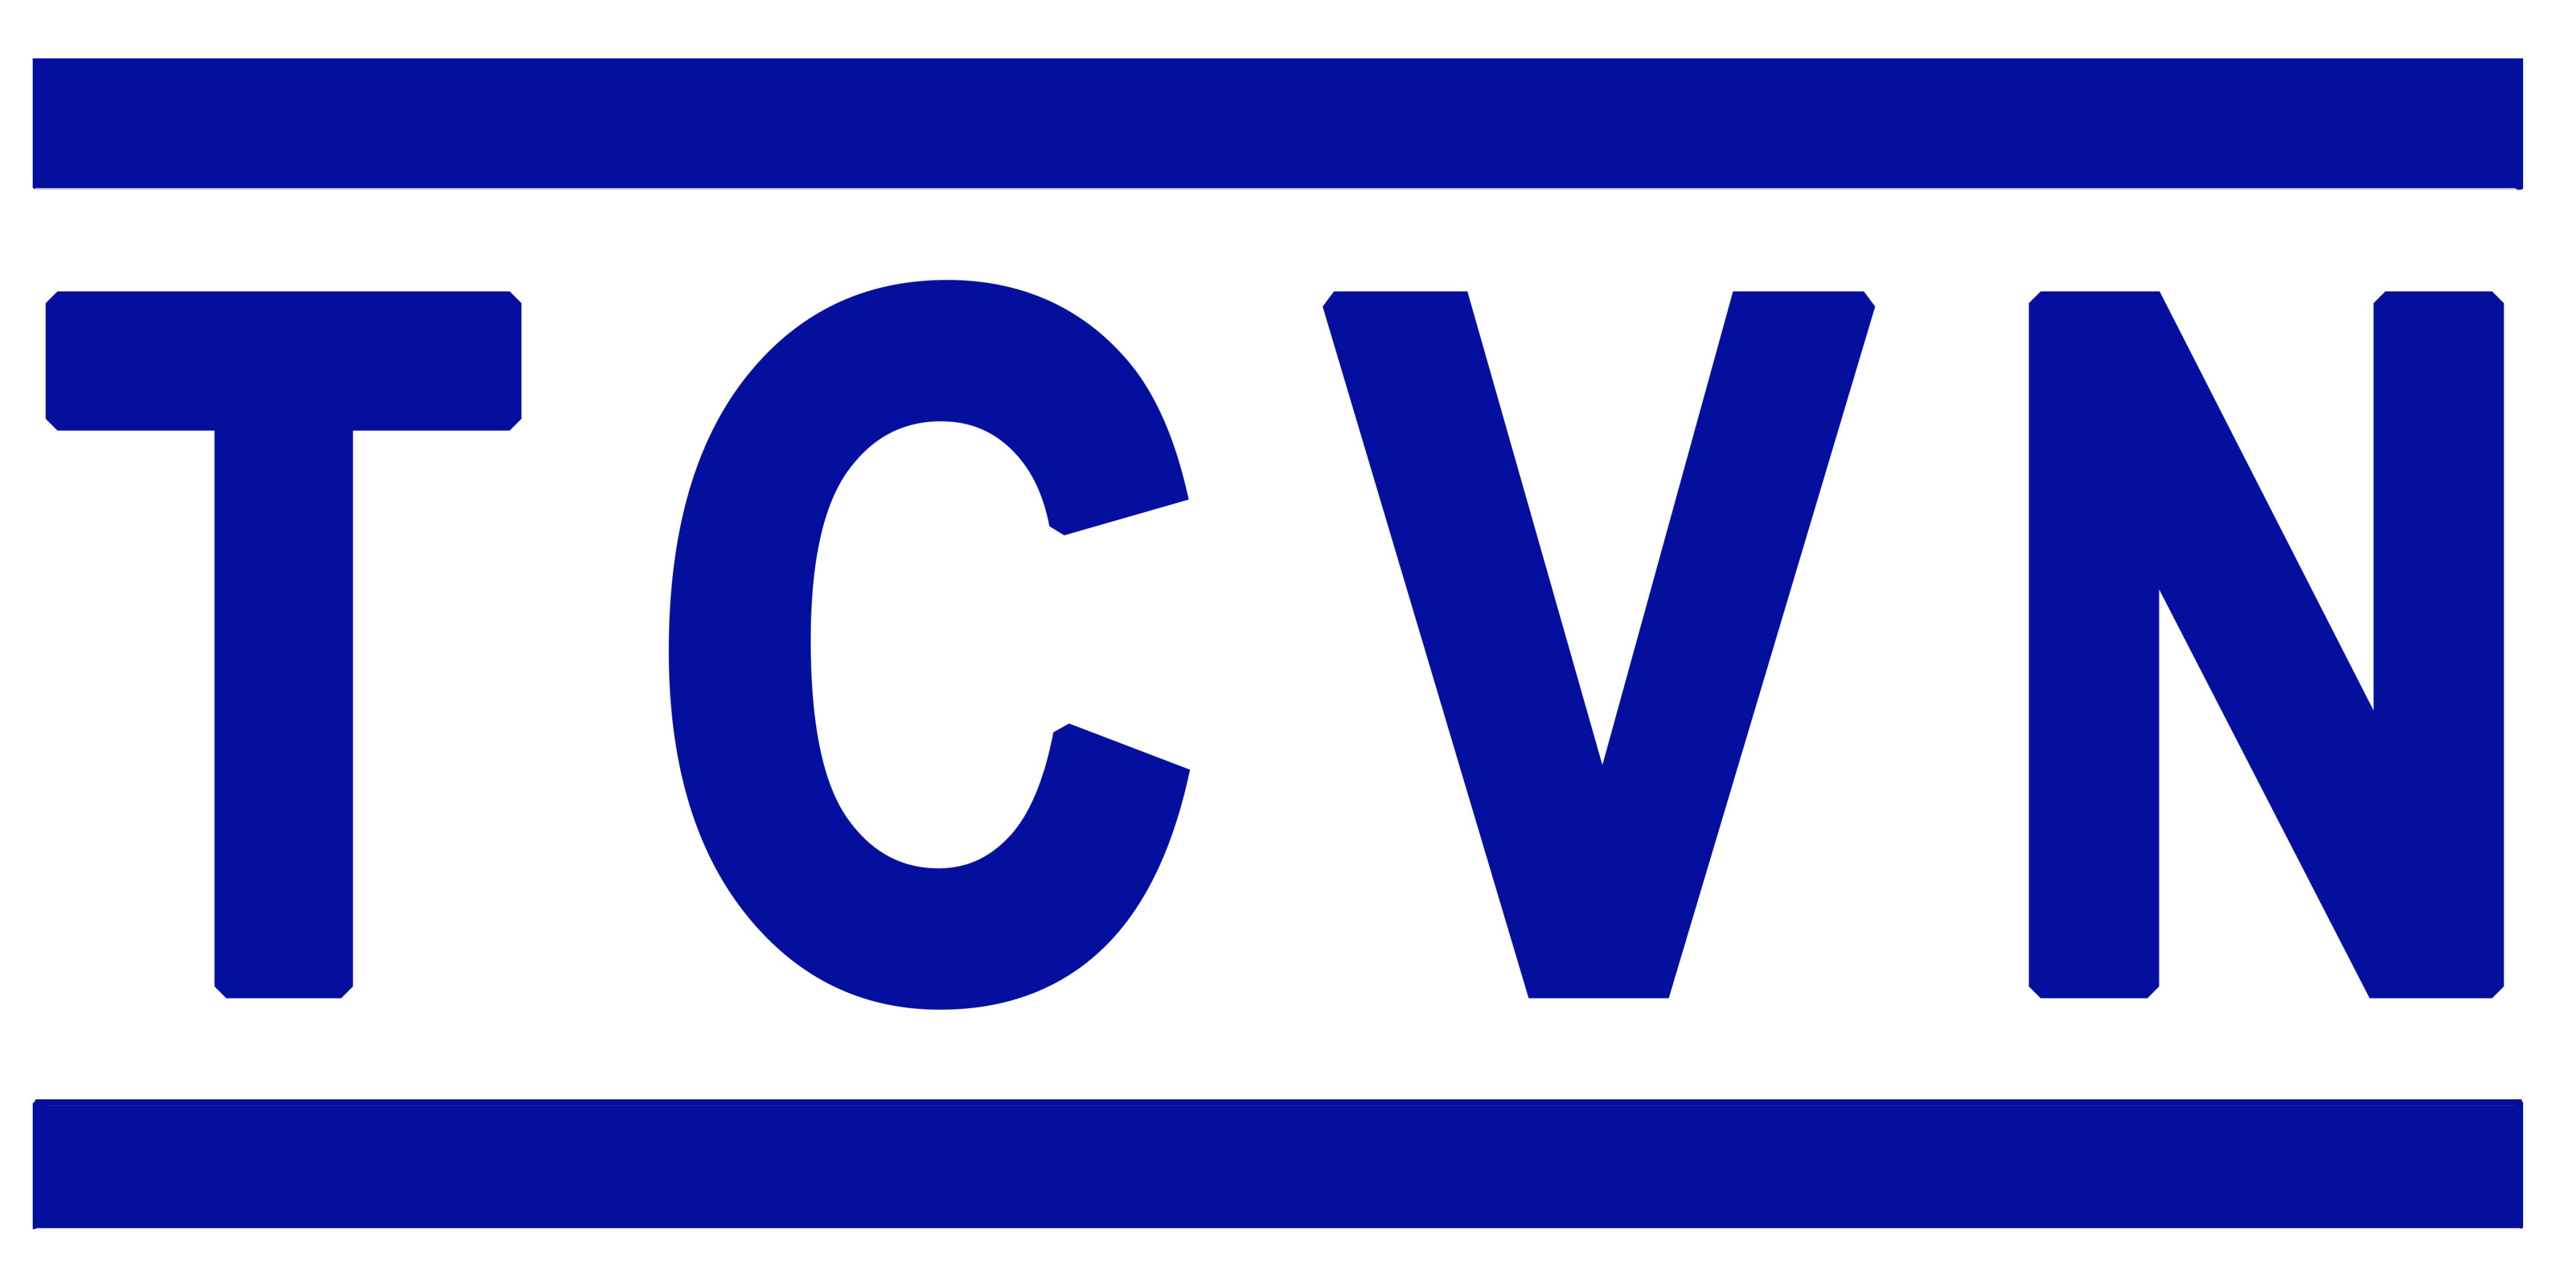 Danh mục tiêu chuẩn Quốc Gia (TCVN)  tháng 2 năm 2022